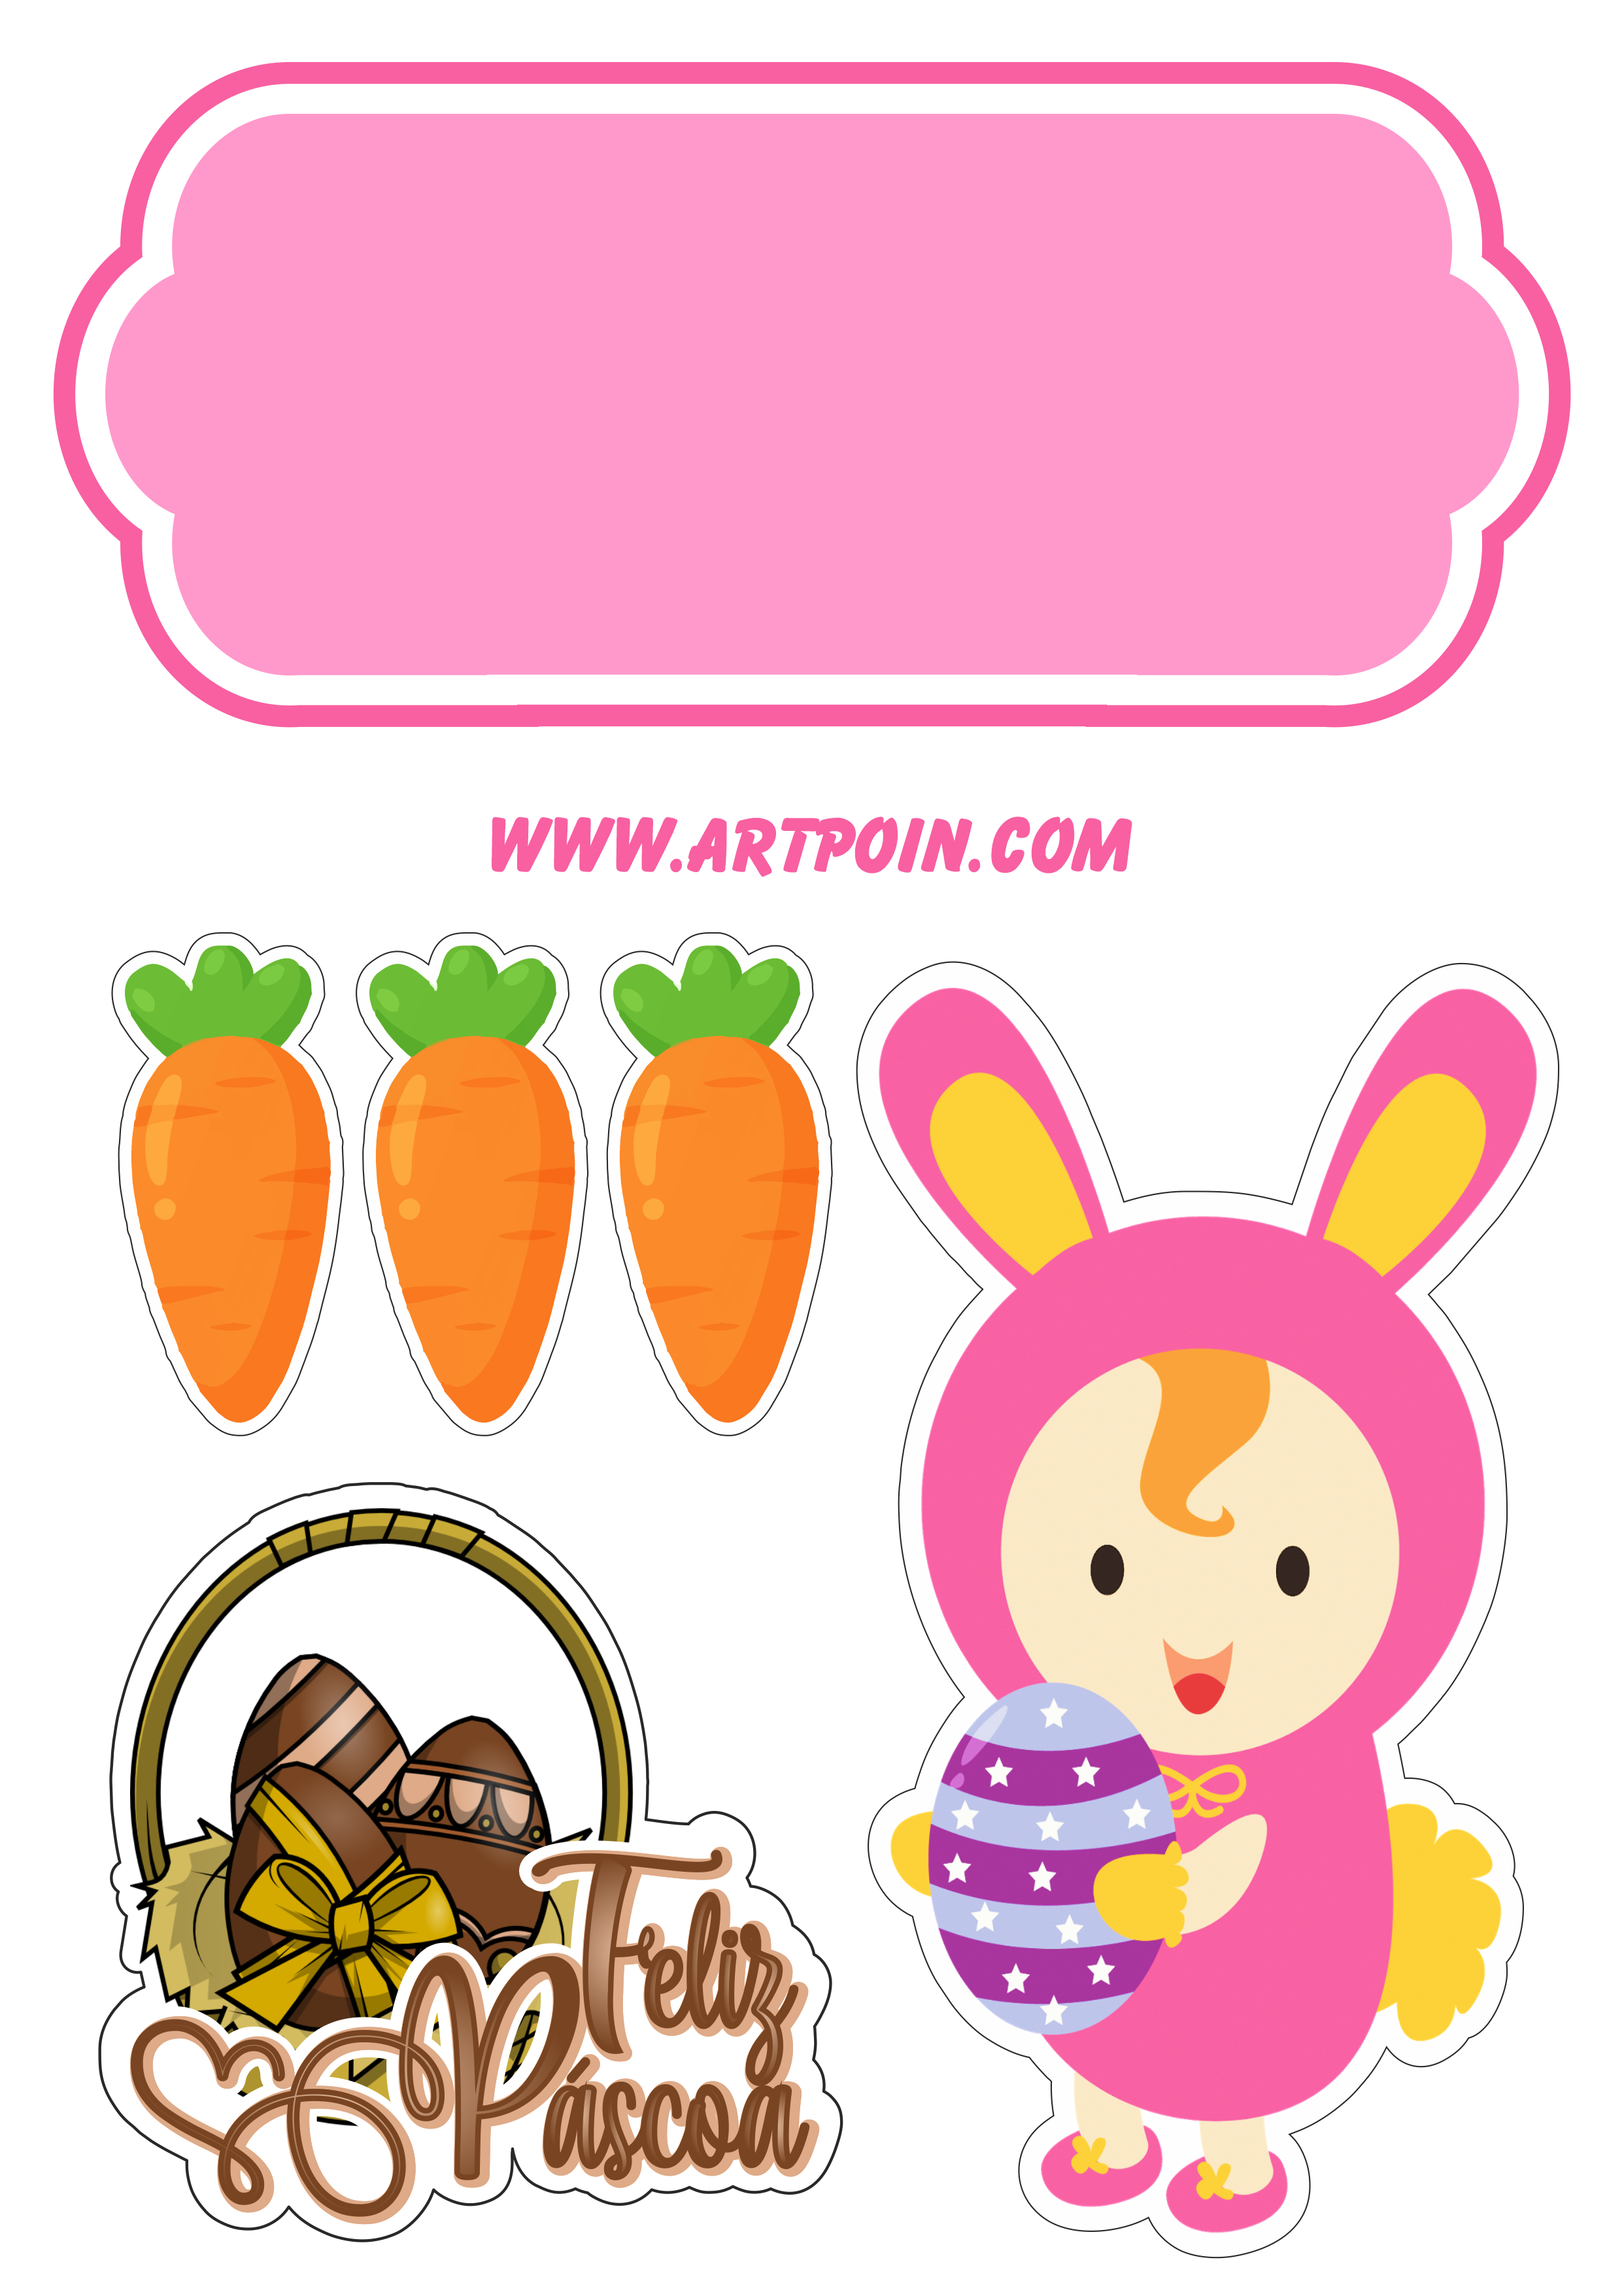 Topo de bolo páscoa baby com ovinhos de chocolate e cenourinhas fantasia de coelhinho rosa png